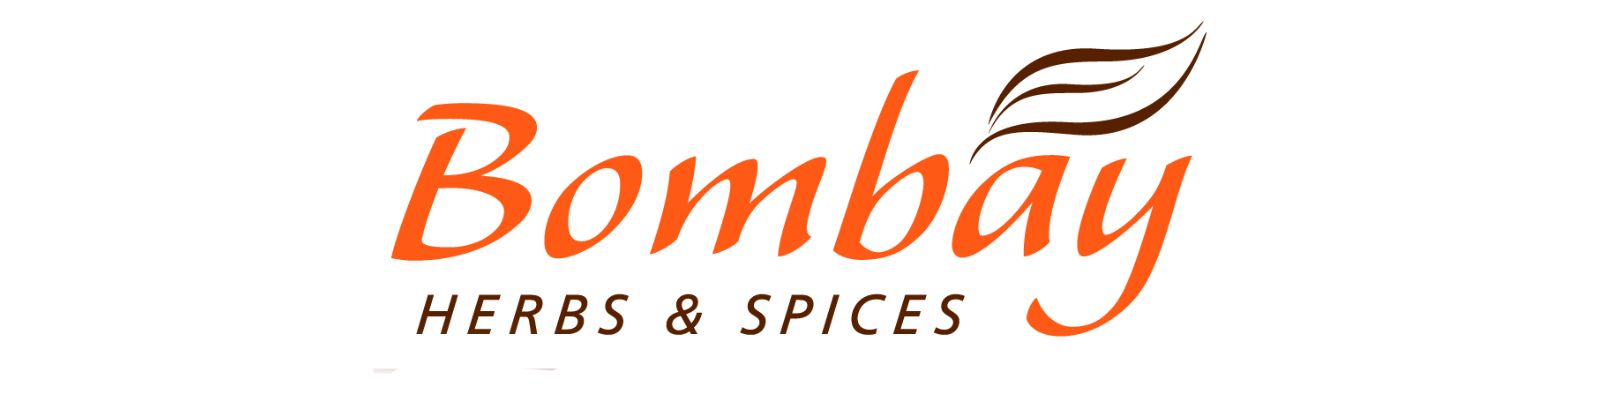 WhatsApp Bombay Herbs & Spices: Saiba como entrar em contato!